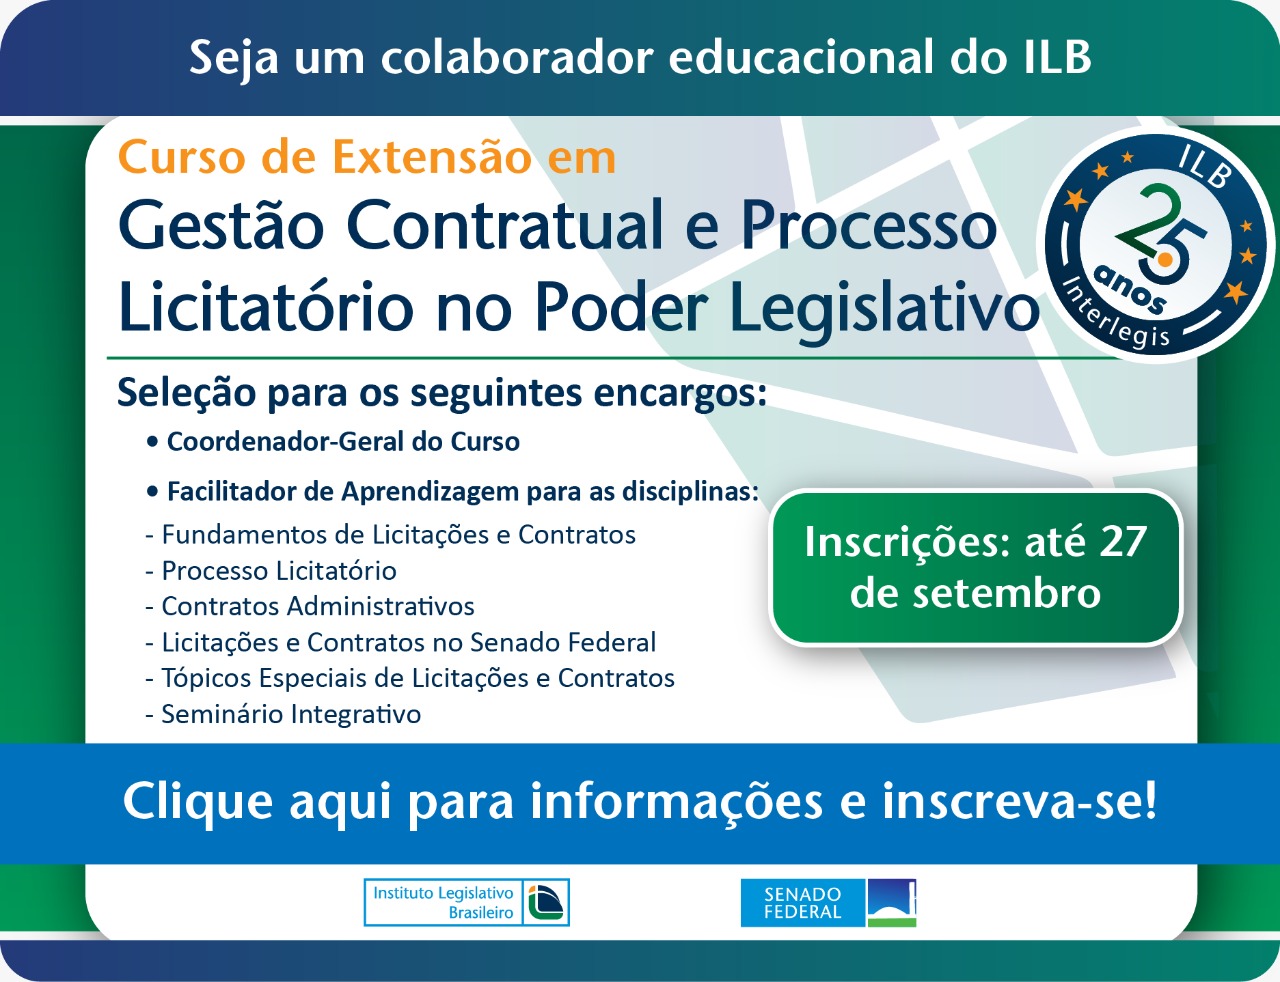 Credenciamento de colaboradores educacionais para Curso de Extensão em Gestão Contratual e Processo Licitatório no Poder Legislativo